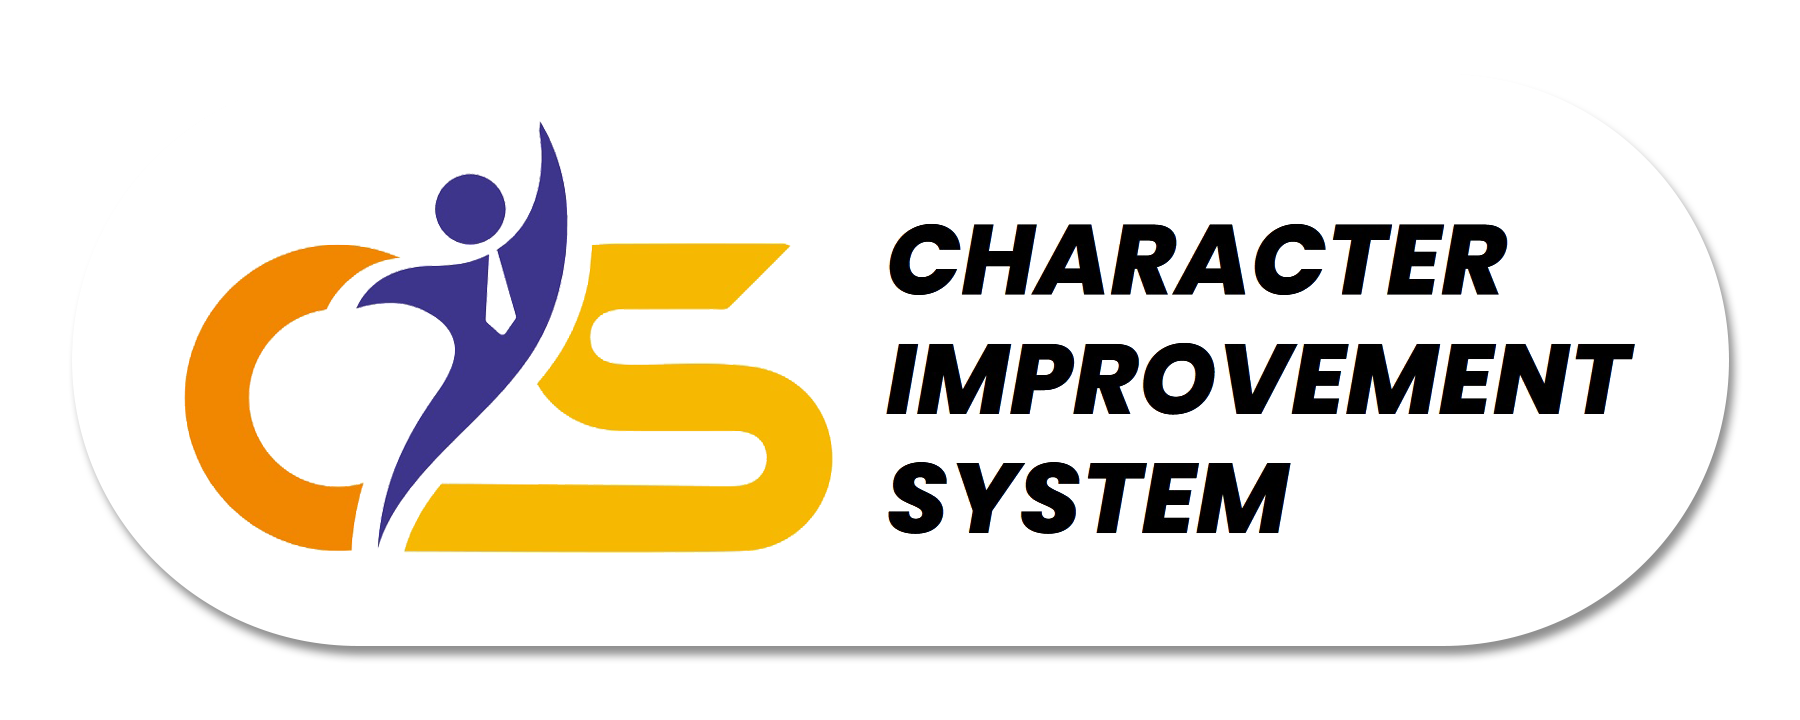 Tangkap Basah Kebaikan - Launching Character Improvement System Sekolah Pesat